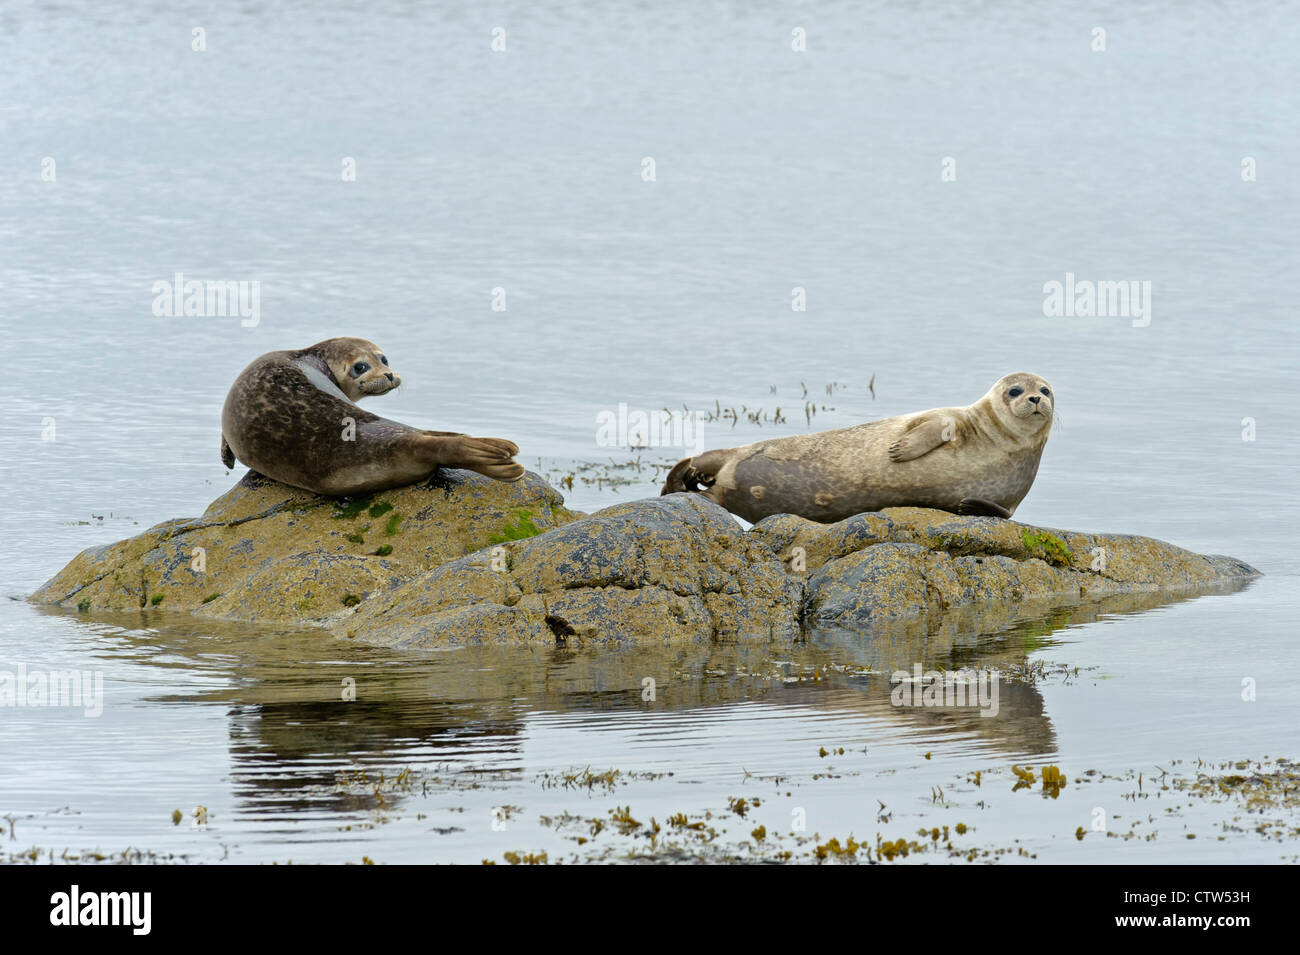 Conjoint ou le phoque commun (Phoca vitulina) sur les roches. Îles Shetland. Juin 2011. Banque D'Images